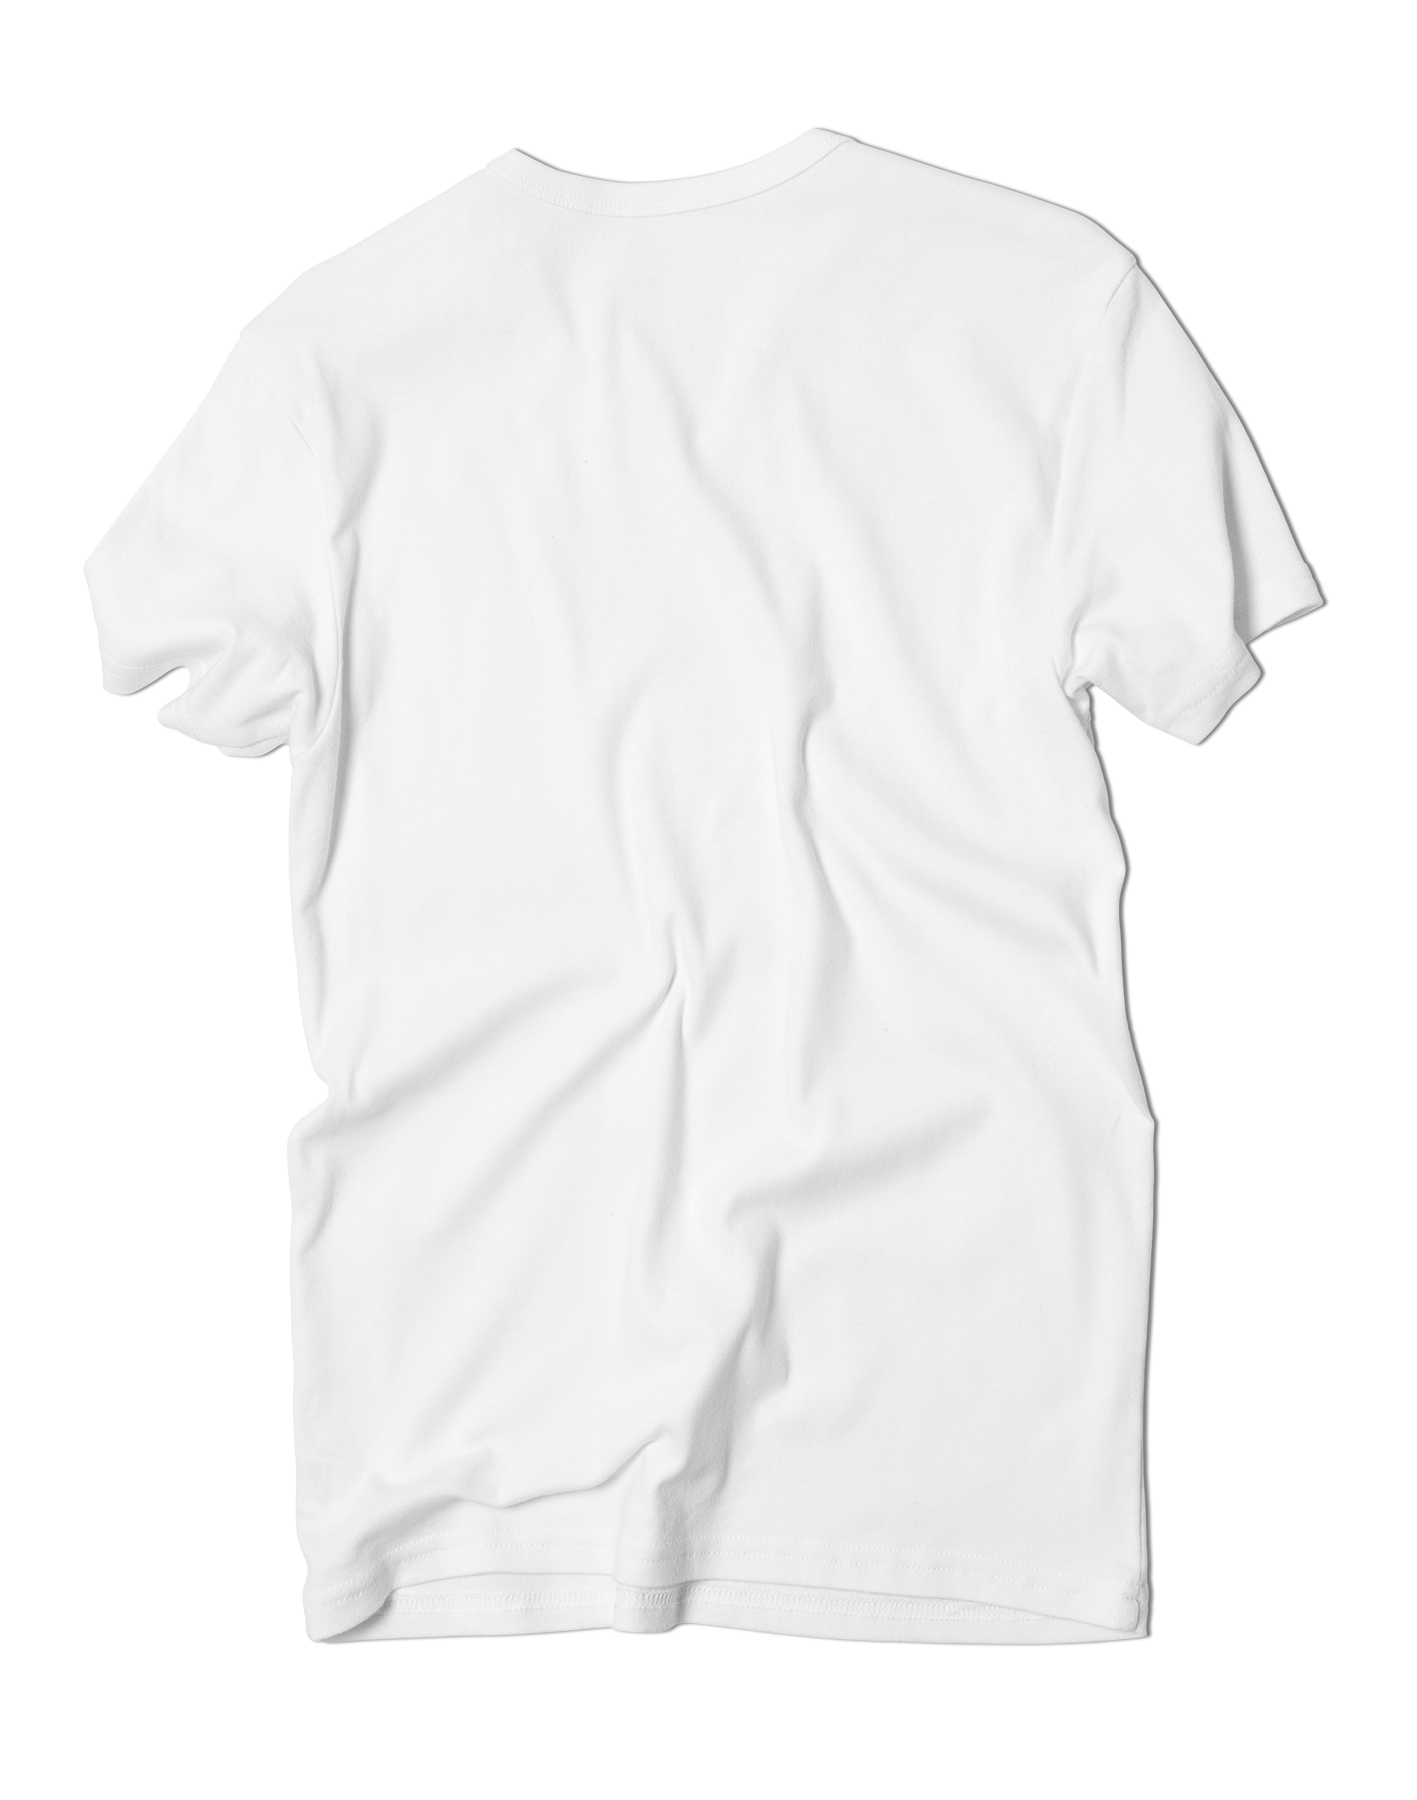 T-Shirt Mockup Template Back | lupon.gov.ph